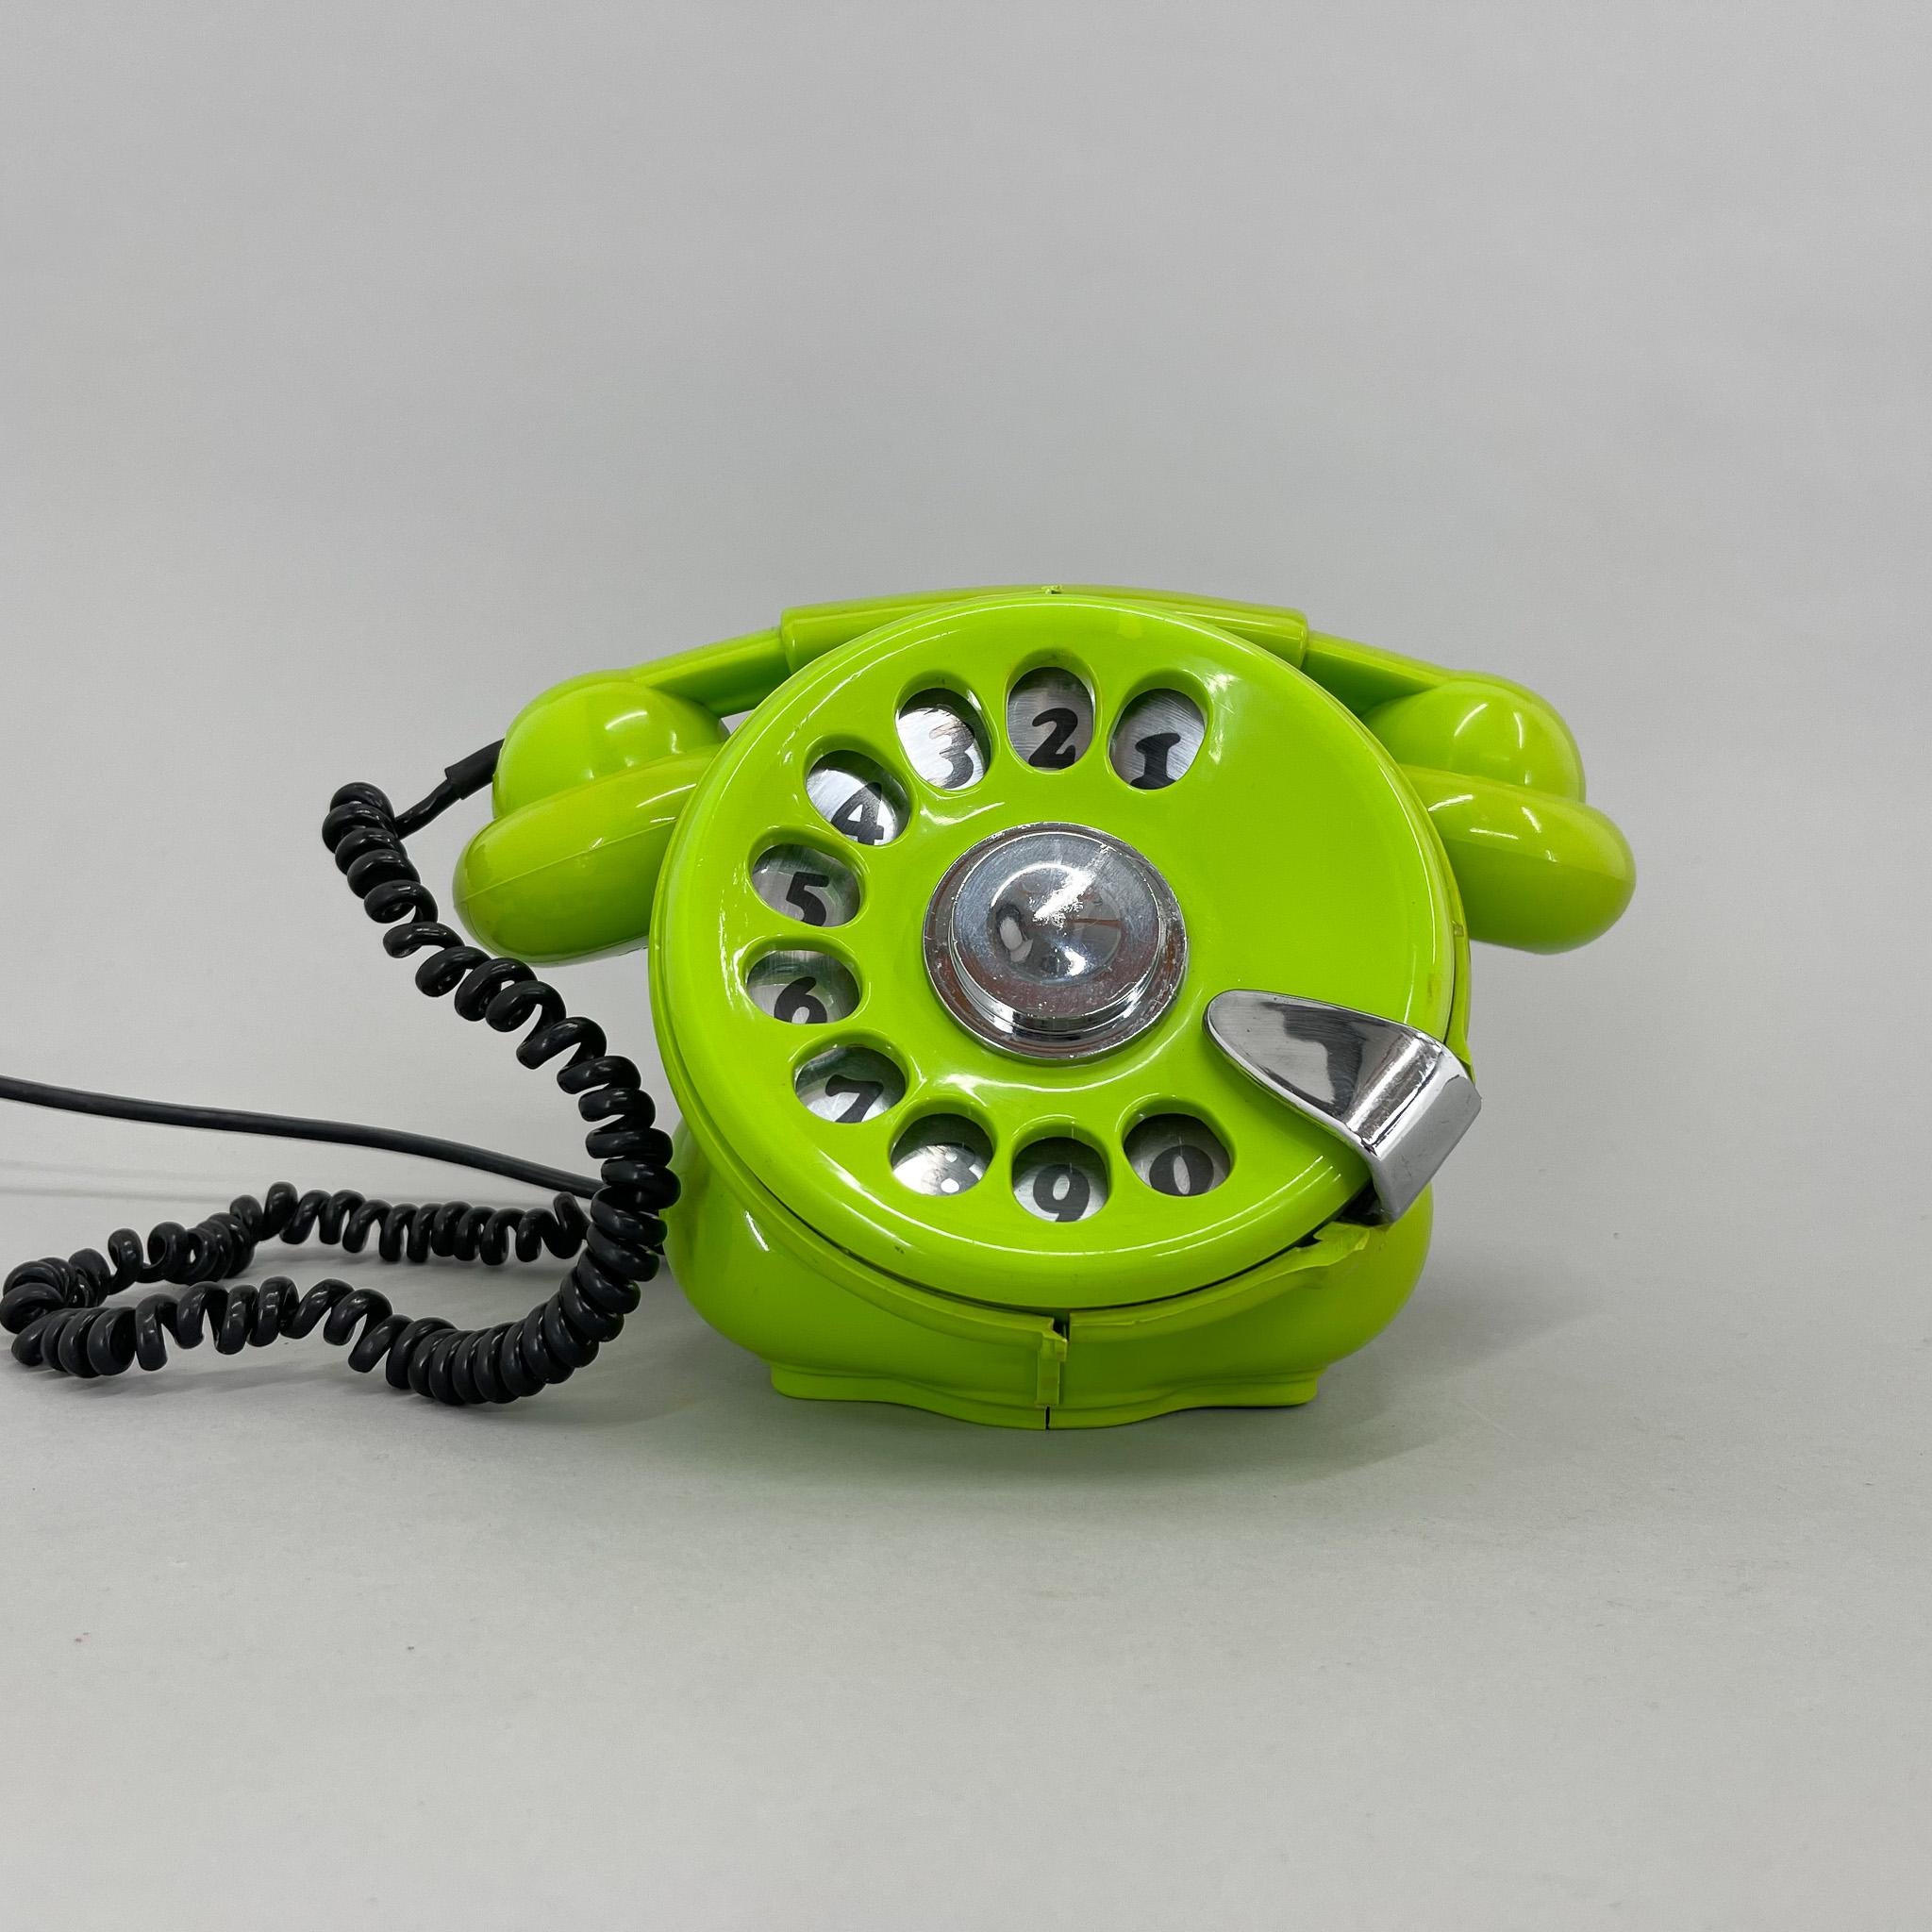 1970 telephone